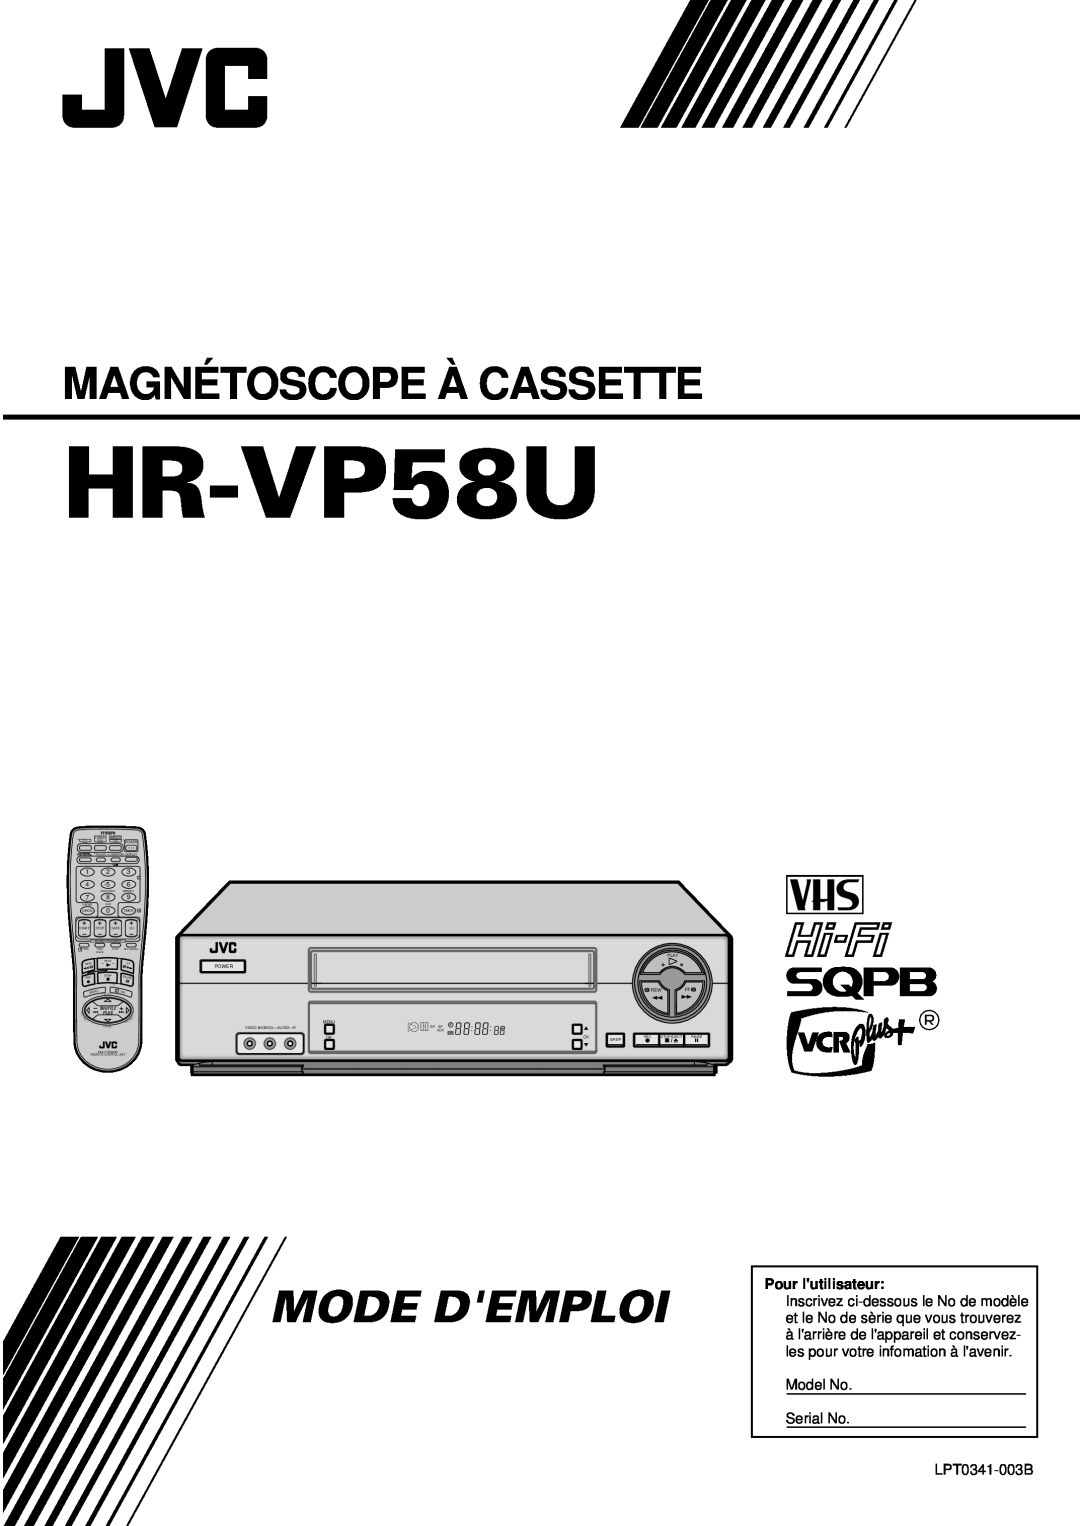 JVC HR-VP58U manual Magnétoscope À Cassette, Mode Demploi, Pour lutilisateur, Model No Serial No, LPT0341-003B, Play, Plus 